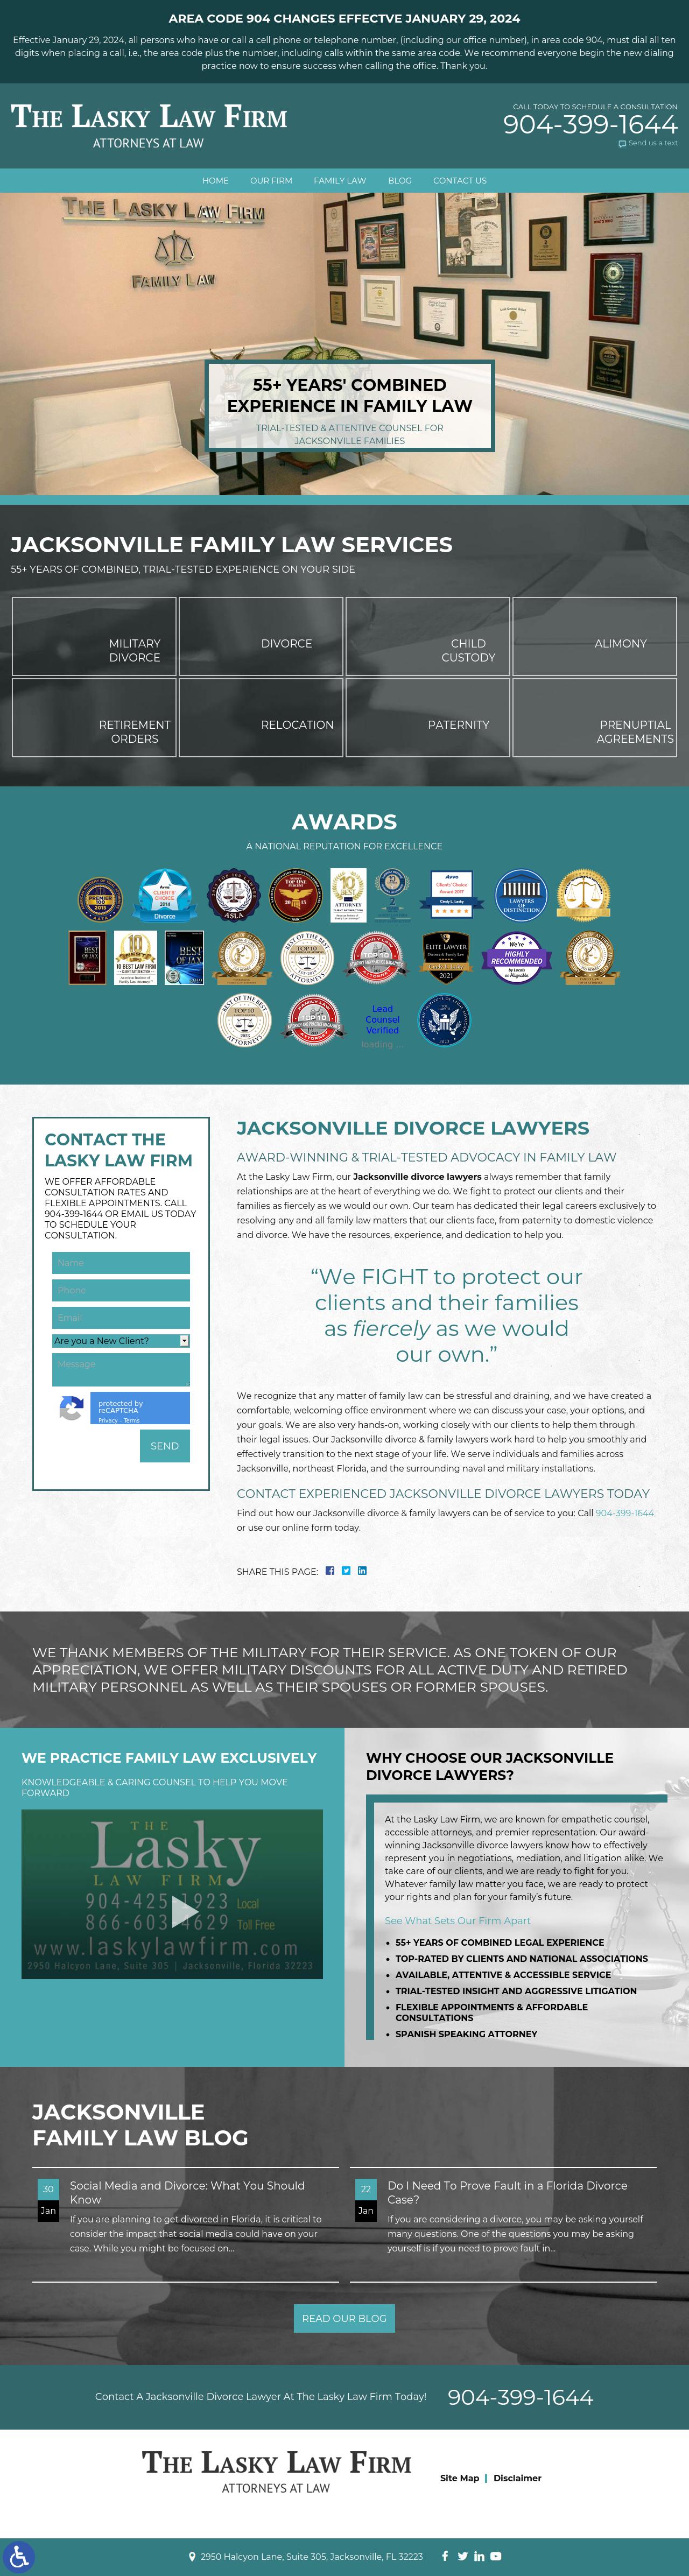 Lasky Law Firm - Jacksonville FL Lawyers